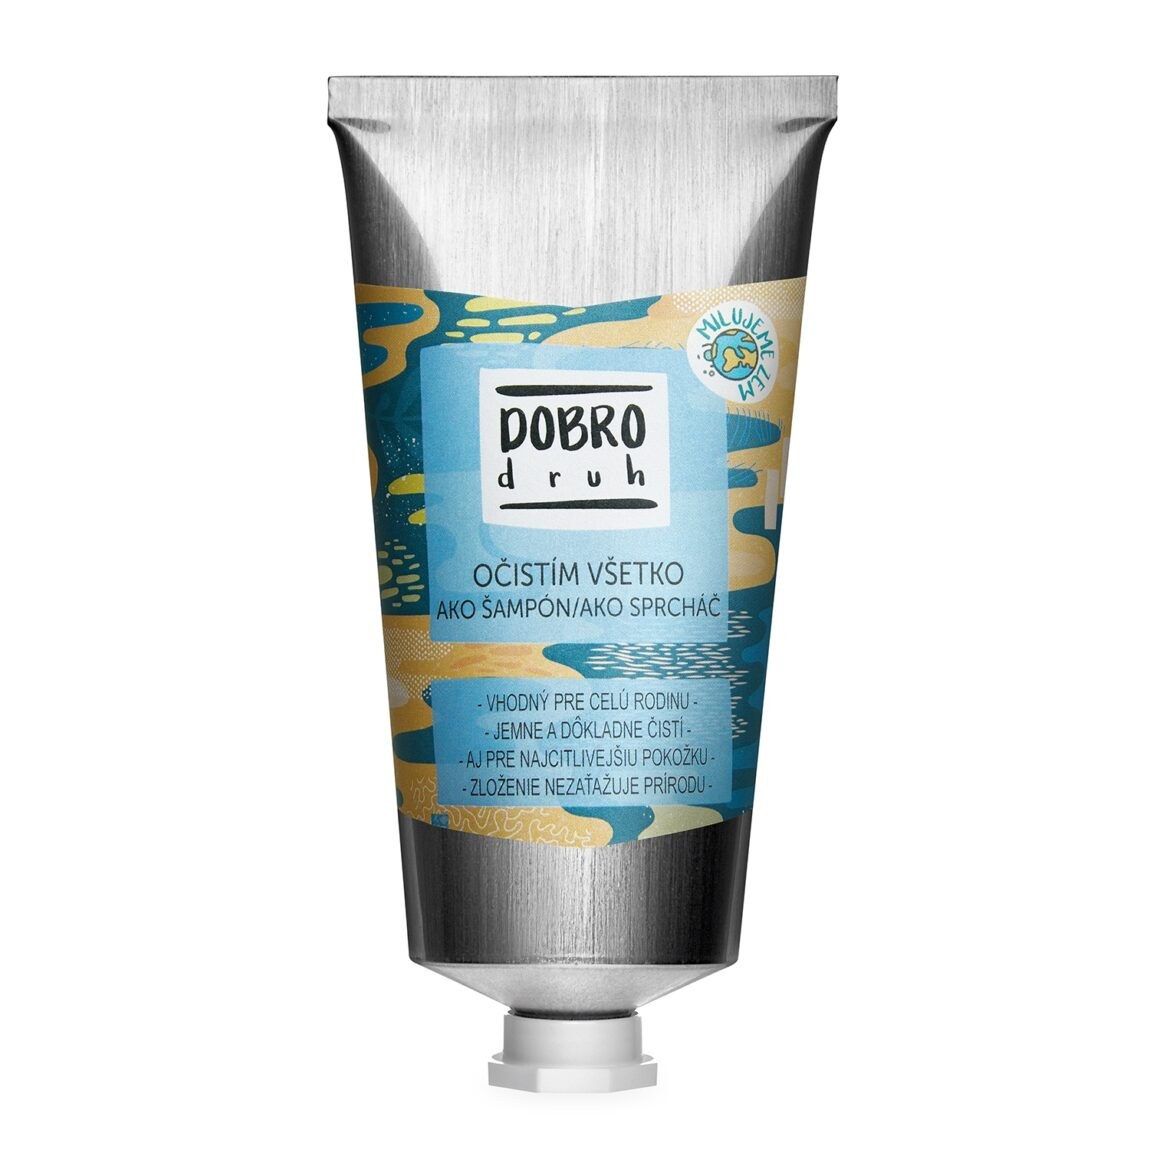 SOAPHORIA DOBROdruh - šampon a sprcháč 2v1 75 ml